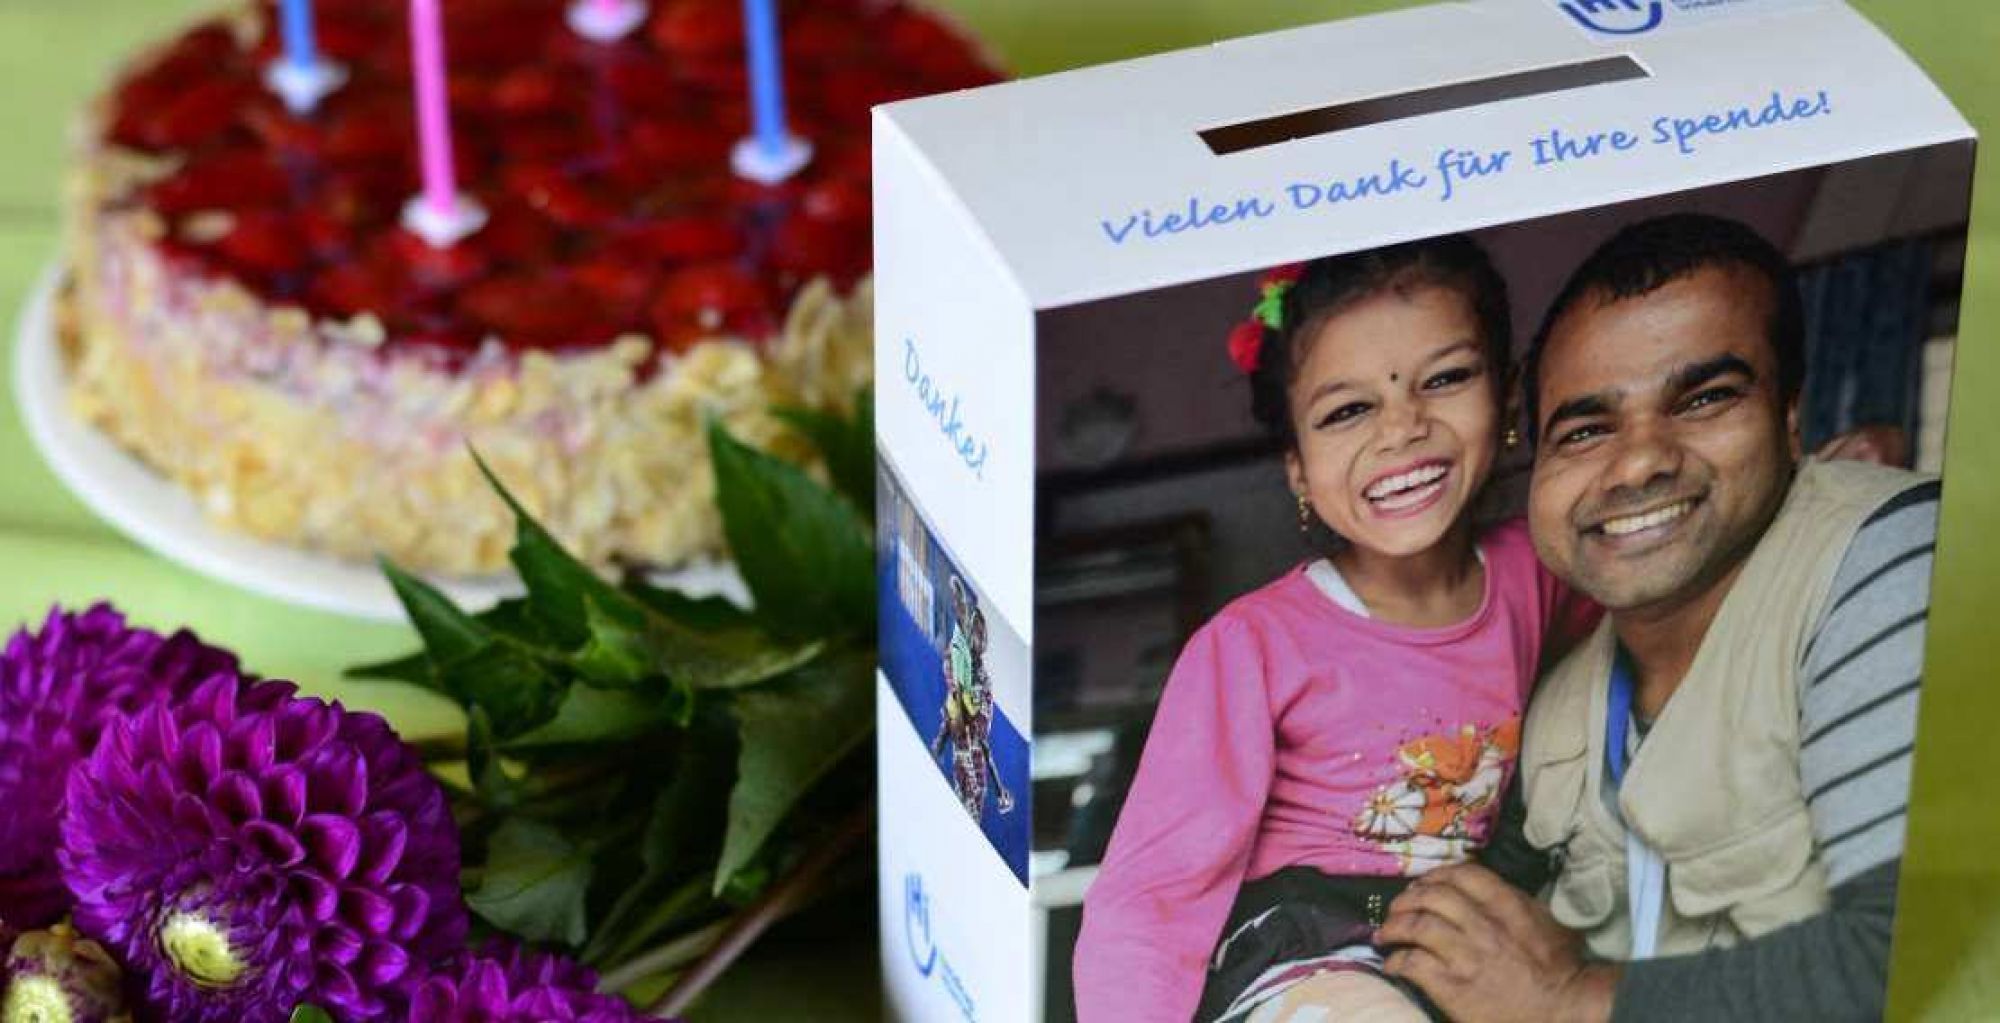 Ein gedeckter Tisch, auf ihm steht eine Spendenbox, ein Geburtstagskuchen und ein Blumenstrauß